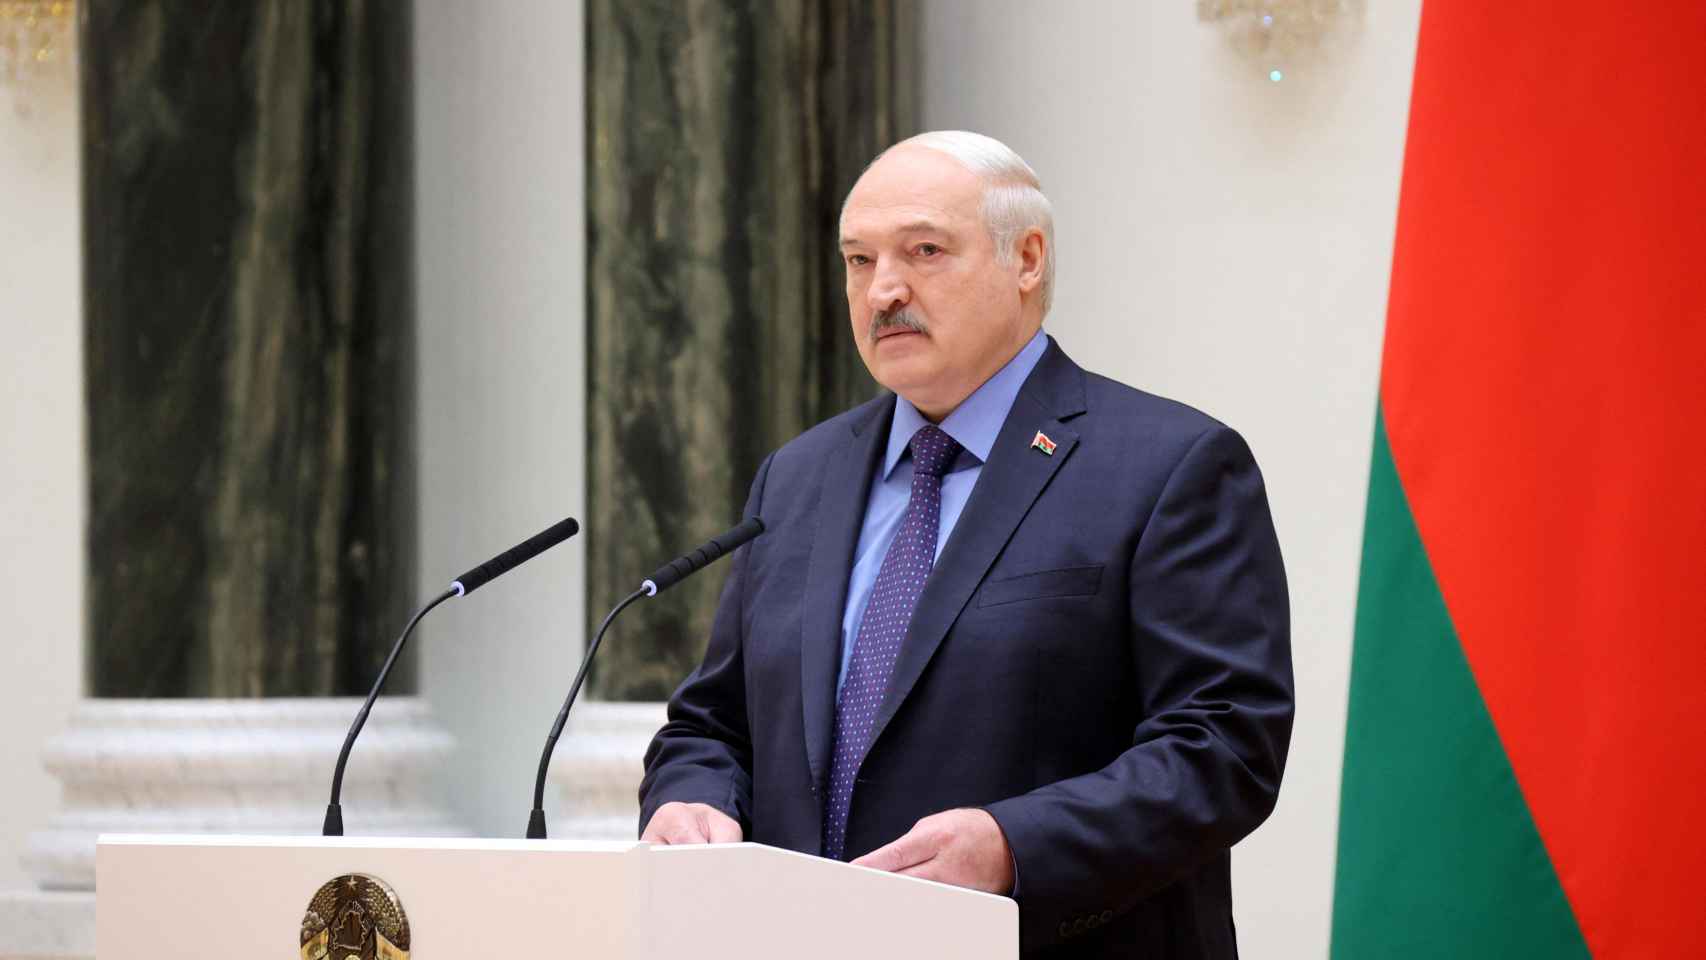 El presidente bielorruso, Alexander Lukashenko, pronuncia un discurso este martes en Minsk.